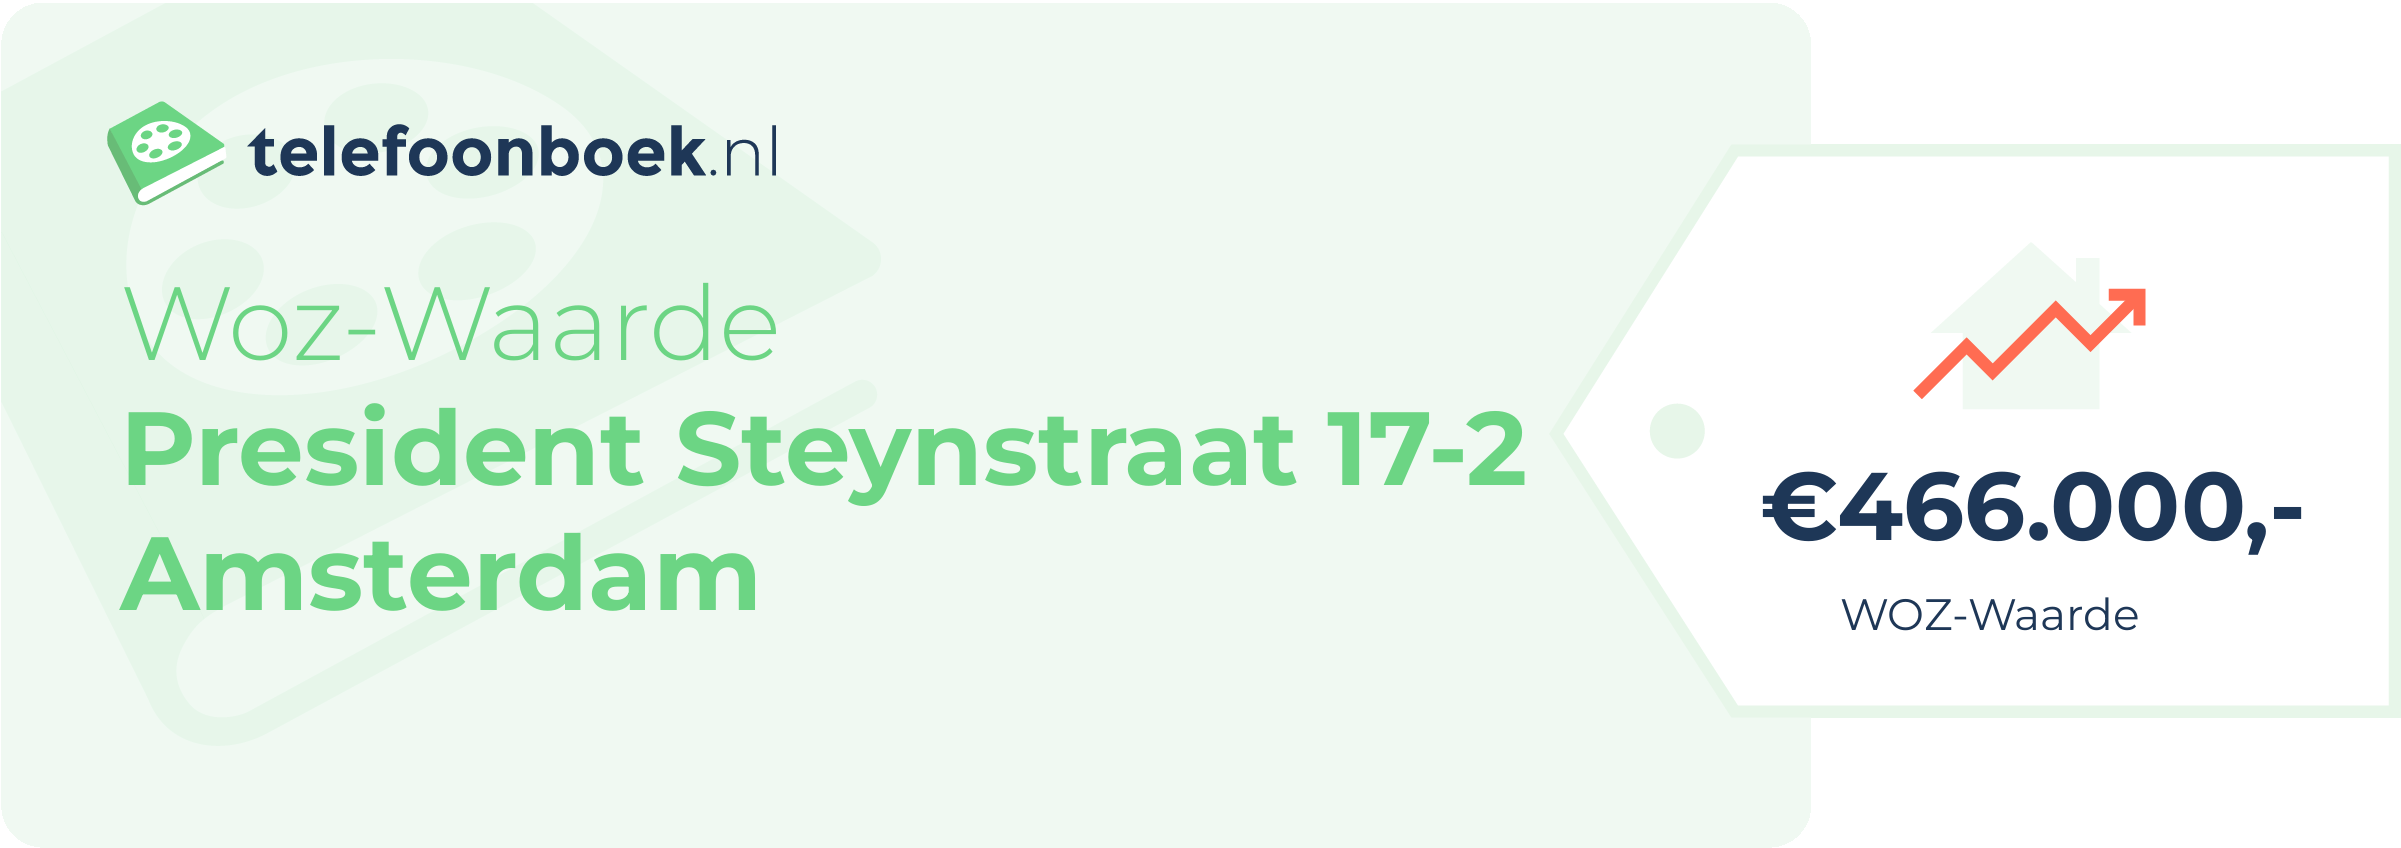 WOZ-waarde President Steynstraat 17-2 Amsterdam